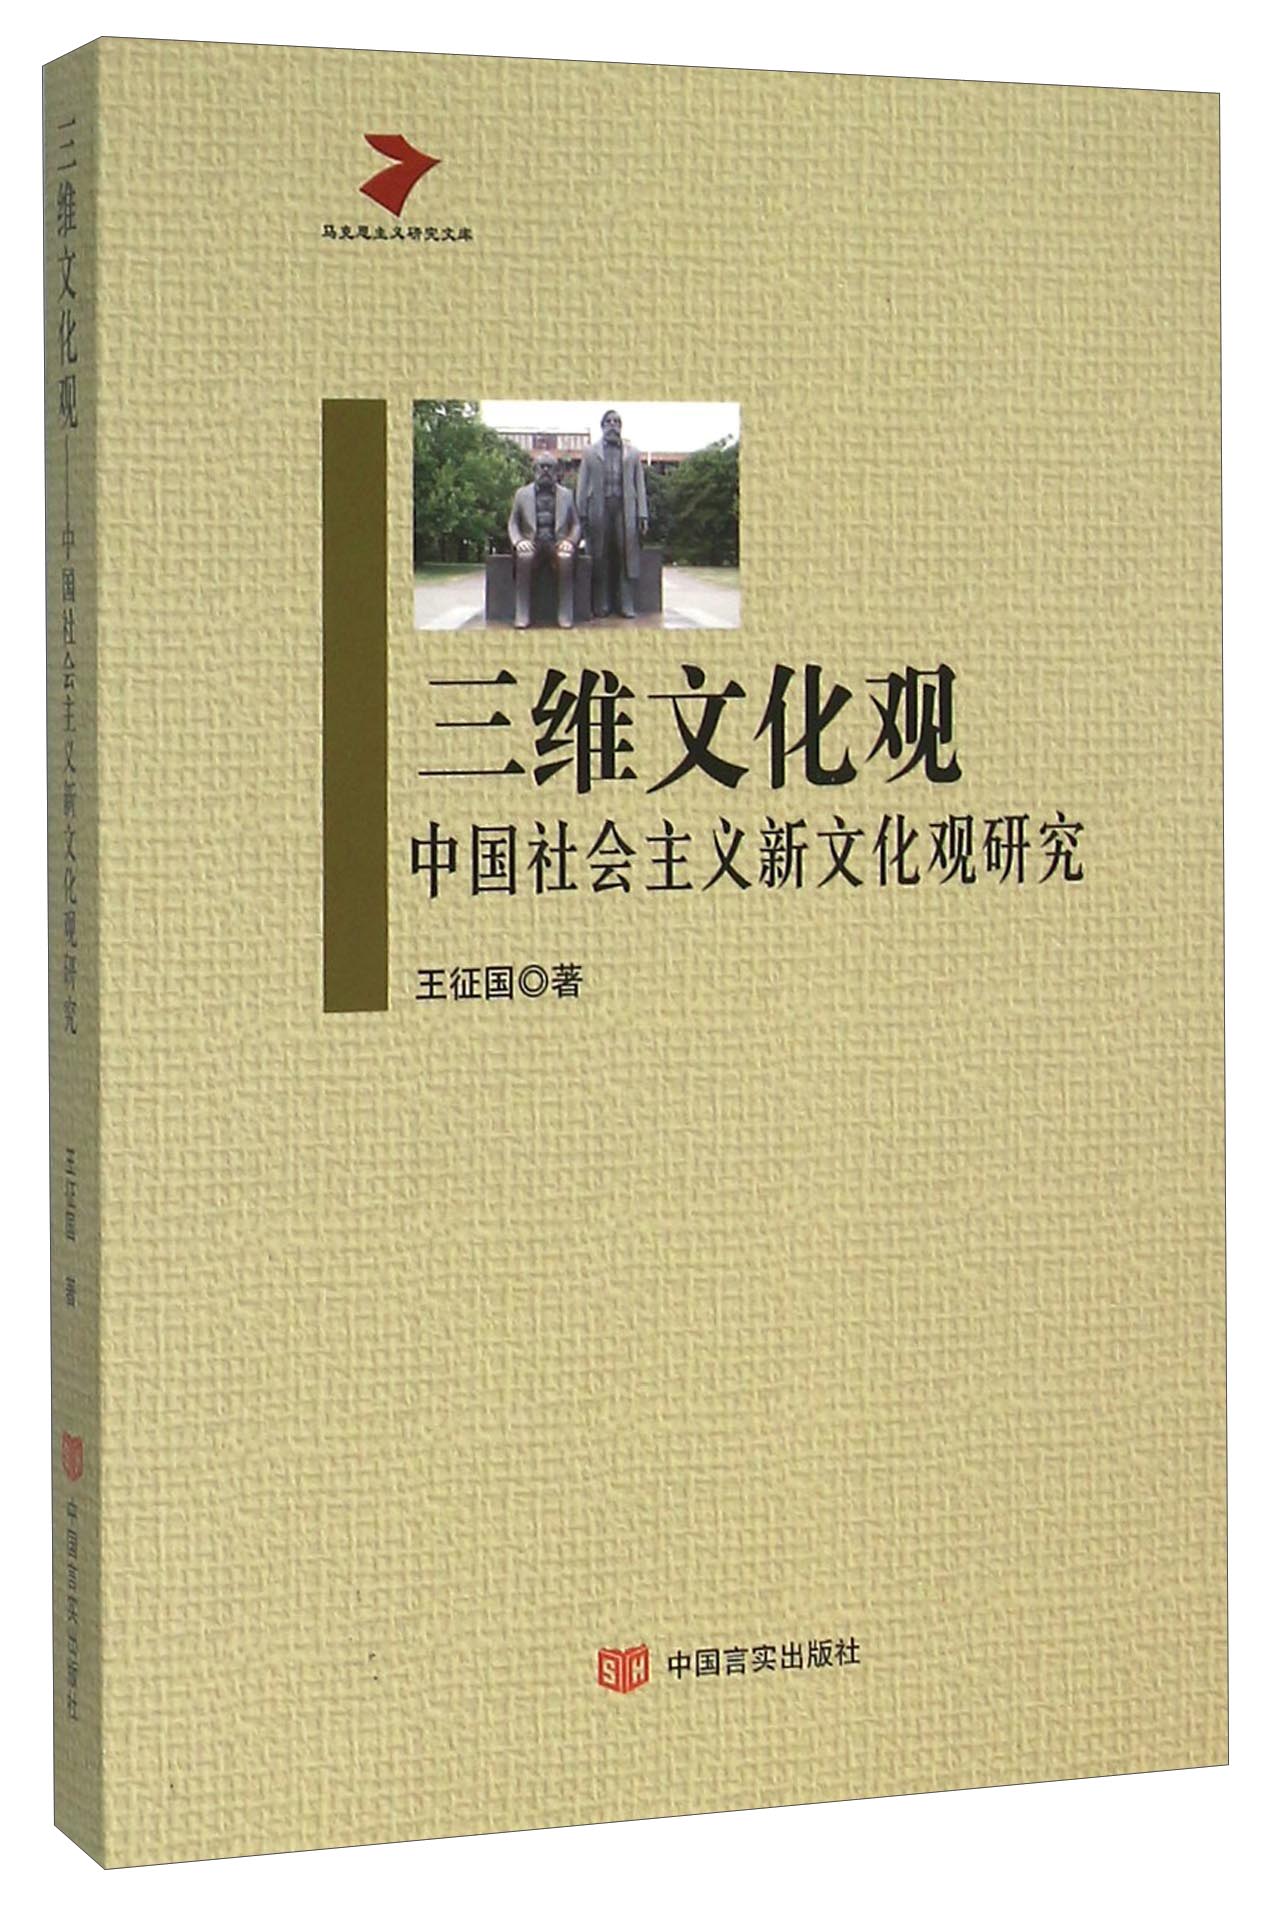 三维文化观 中国社会主义新文化观研究 epub格式下载